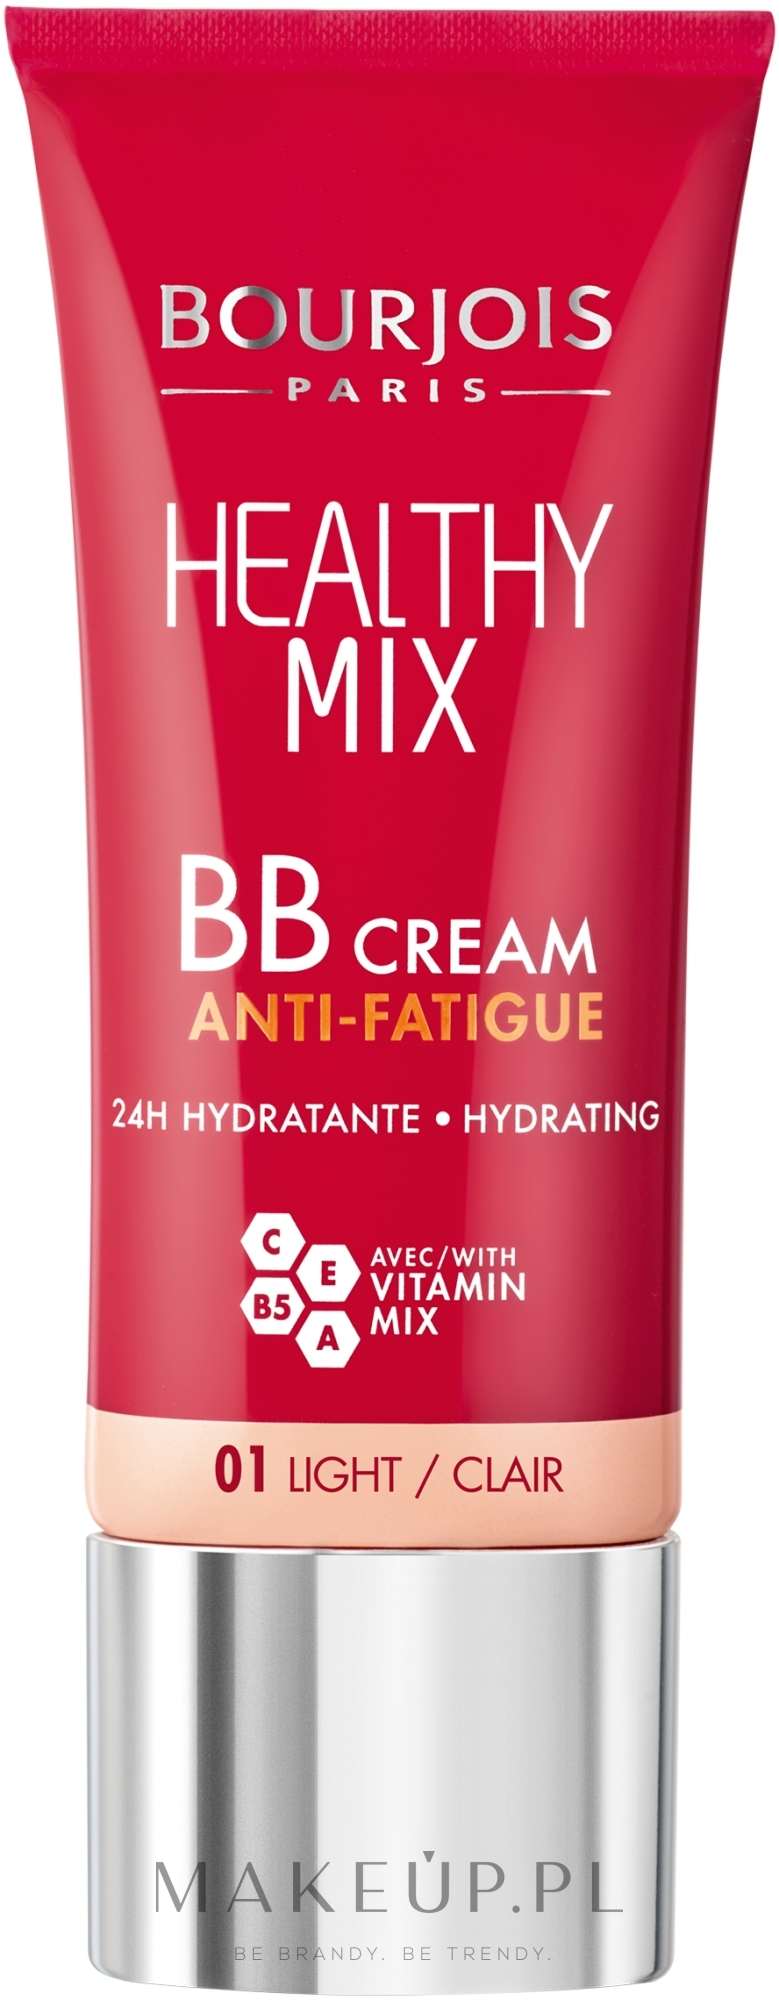 Krem BB wyrównujący koloryt skóry - Bourjois Healthy Mix BB Cream Anti-Fatigue — Zdjęcie 01 - Light/Clair